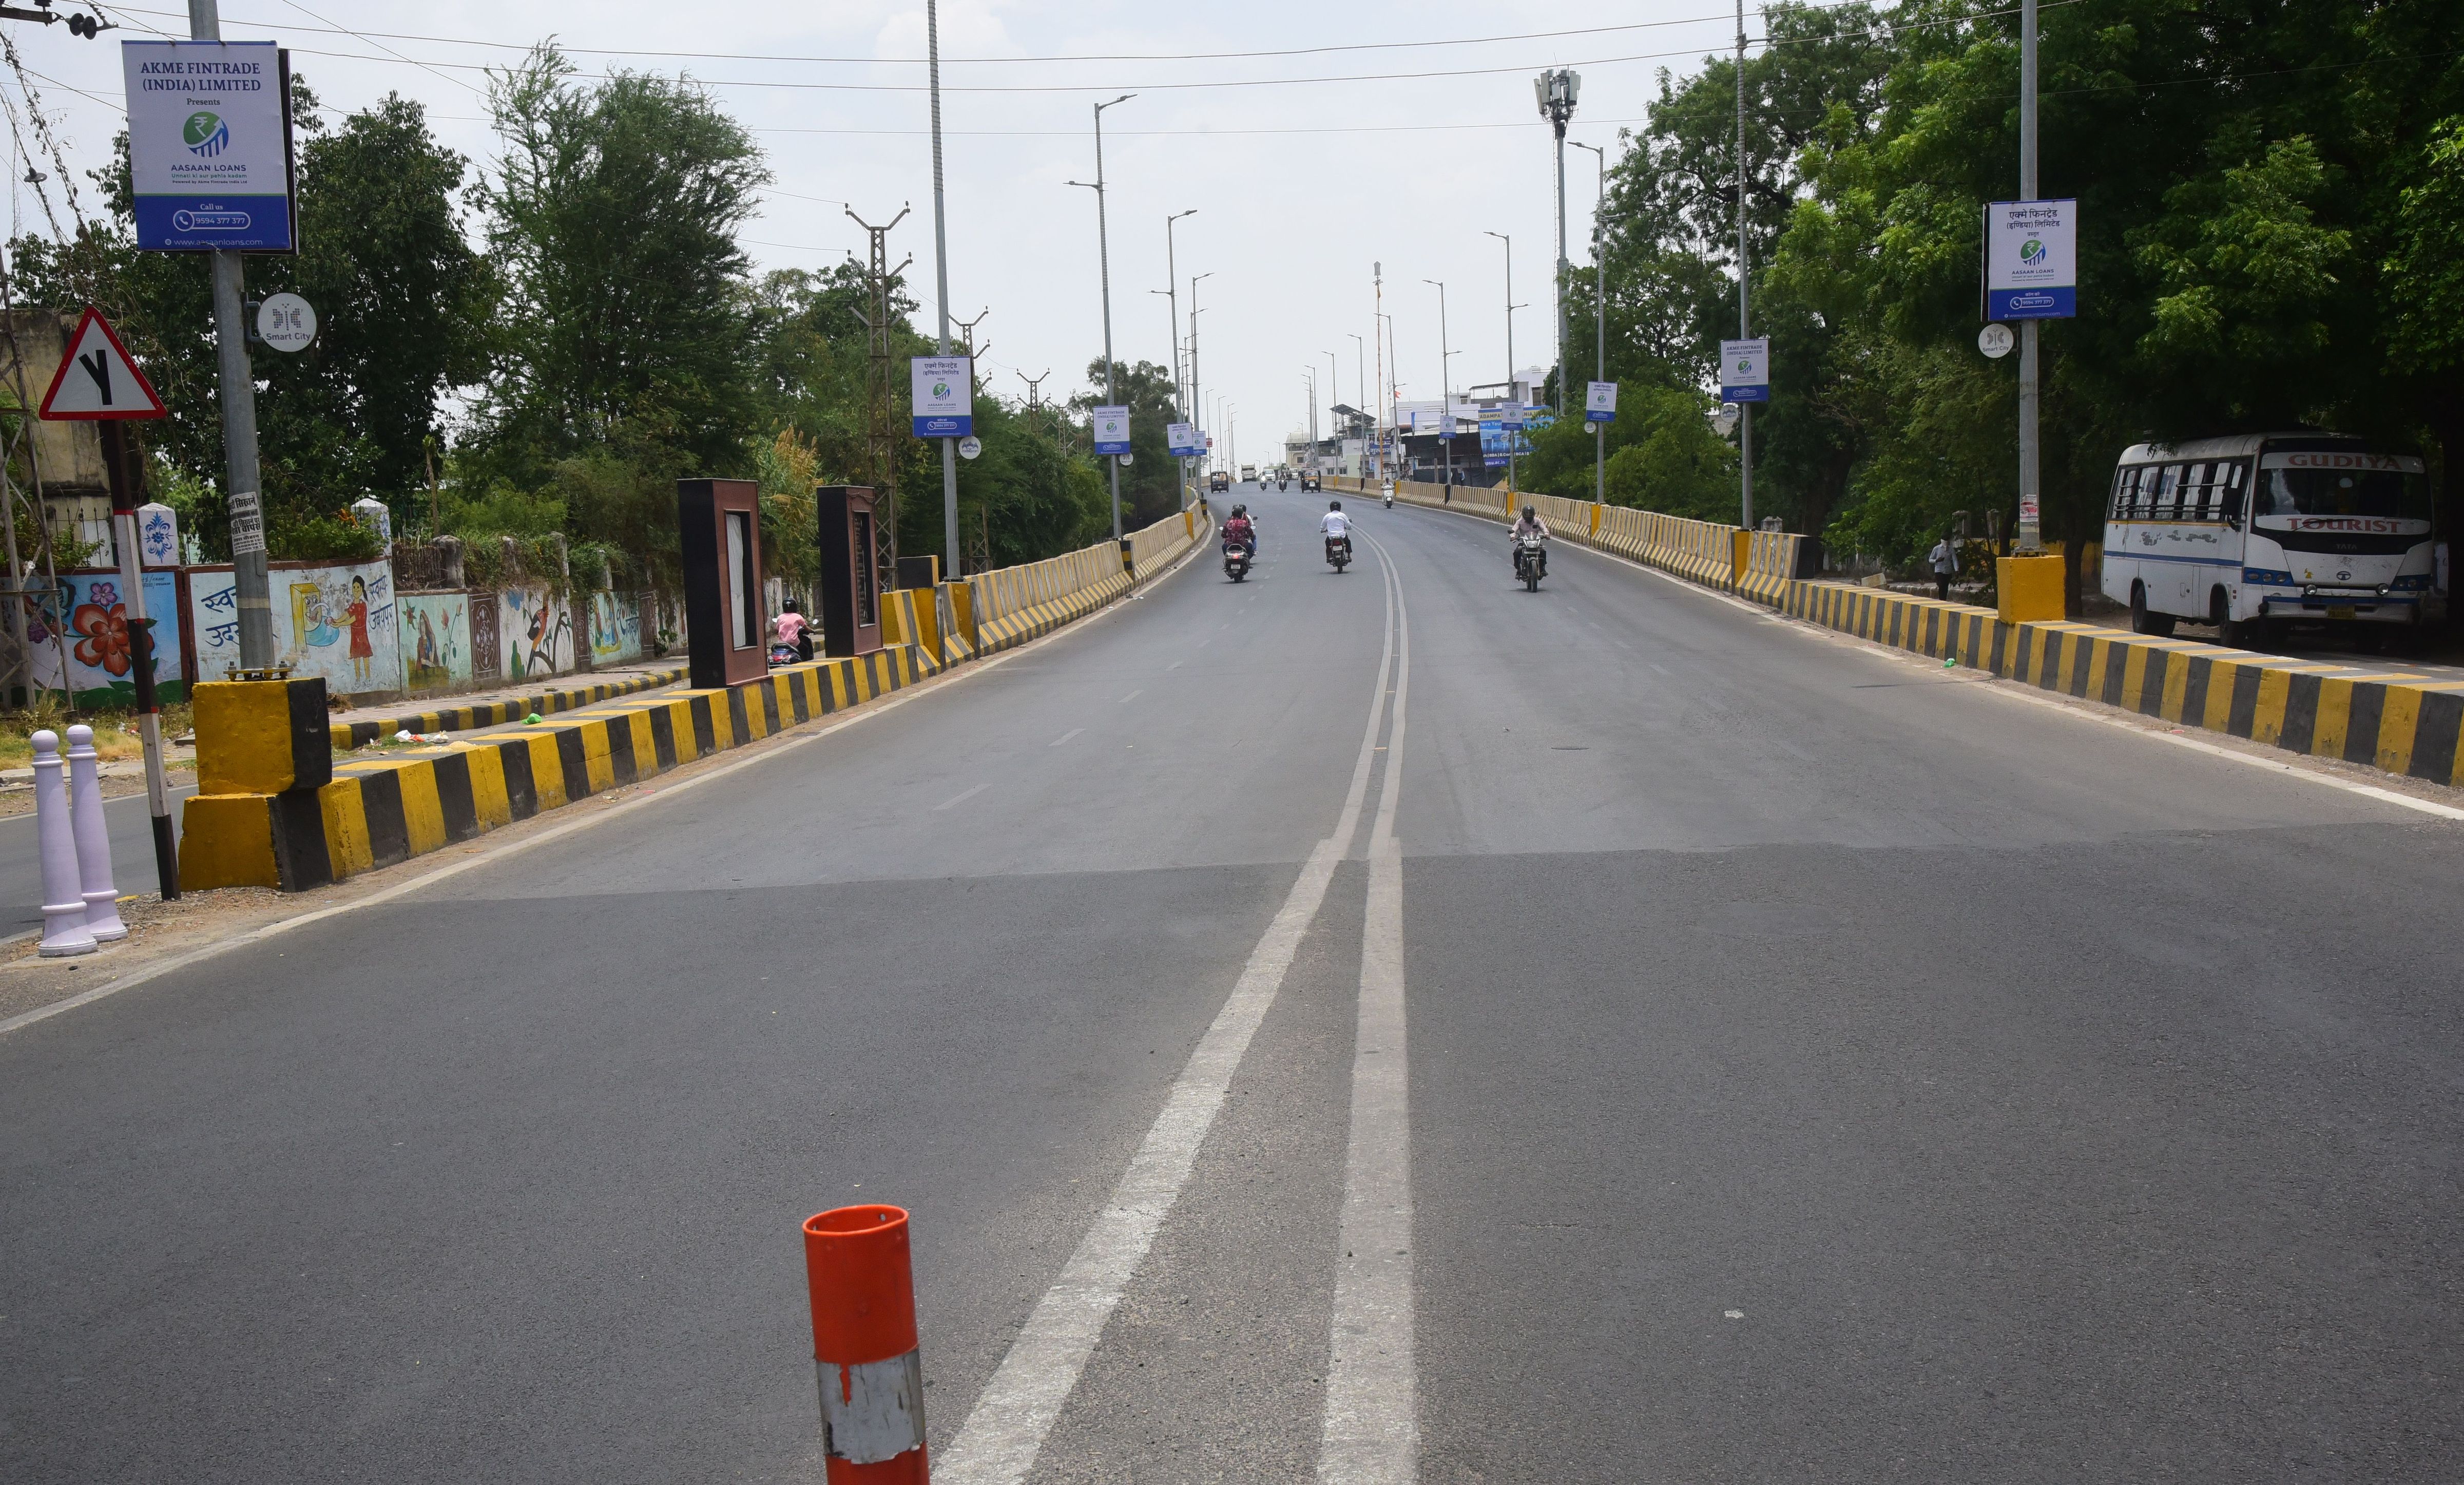 उदयपुर में 44 डिग्री के करीब तापमान रहा इस दौरान दोपहर में सड़कों पर सन्नाटा
छाया रहा।